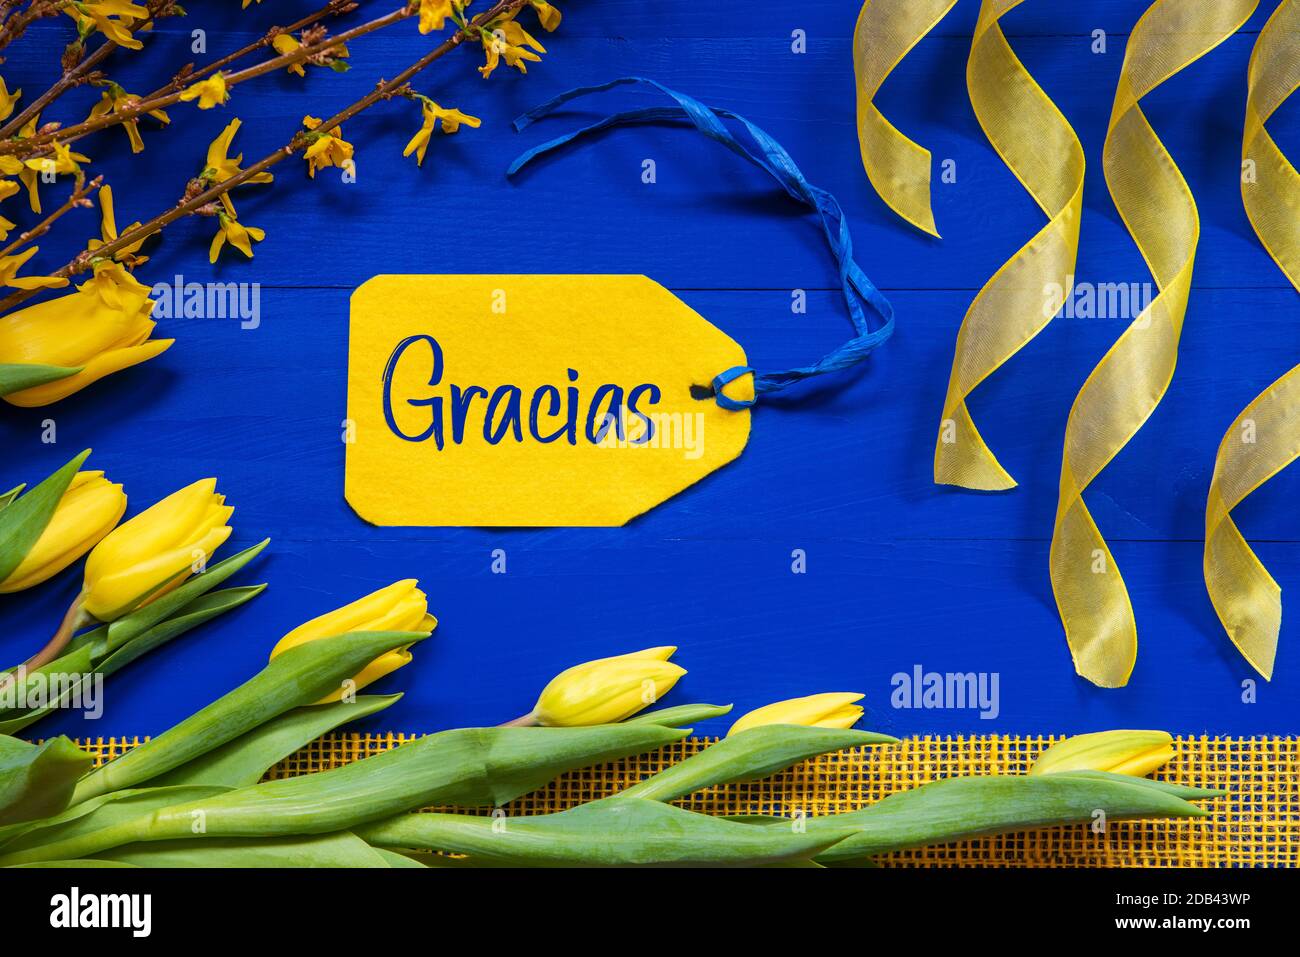 Étiquette avec texte espagnol Gracias signifie Merci. Fleurs de printemps jaunes comme tulipe et branches. Décoration de fête avec ruban. Fond en bois bleu Banque D'Images